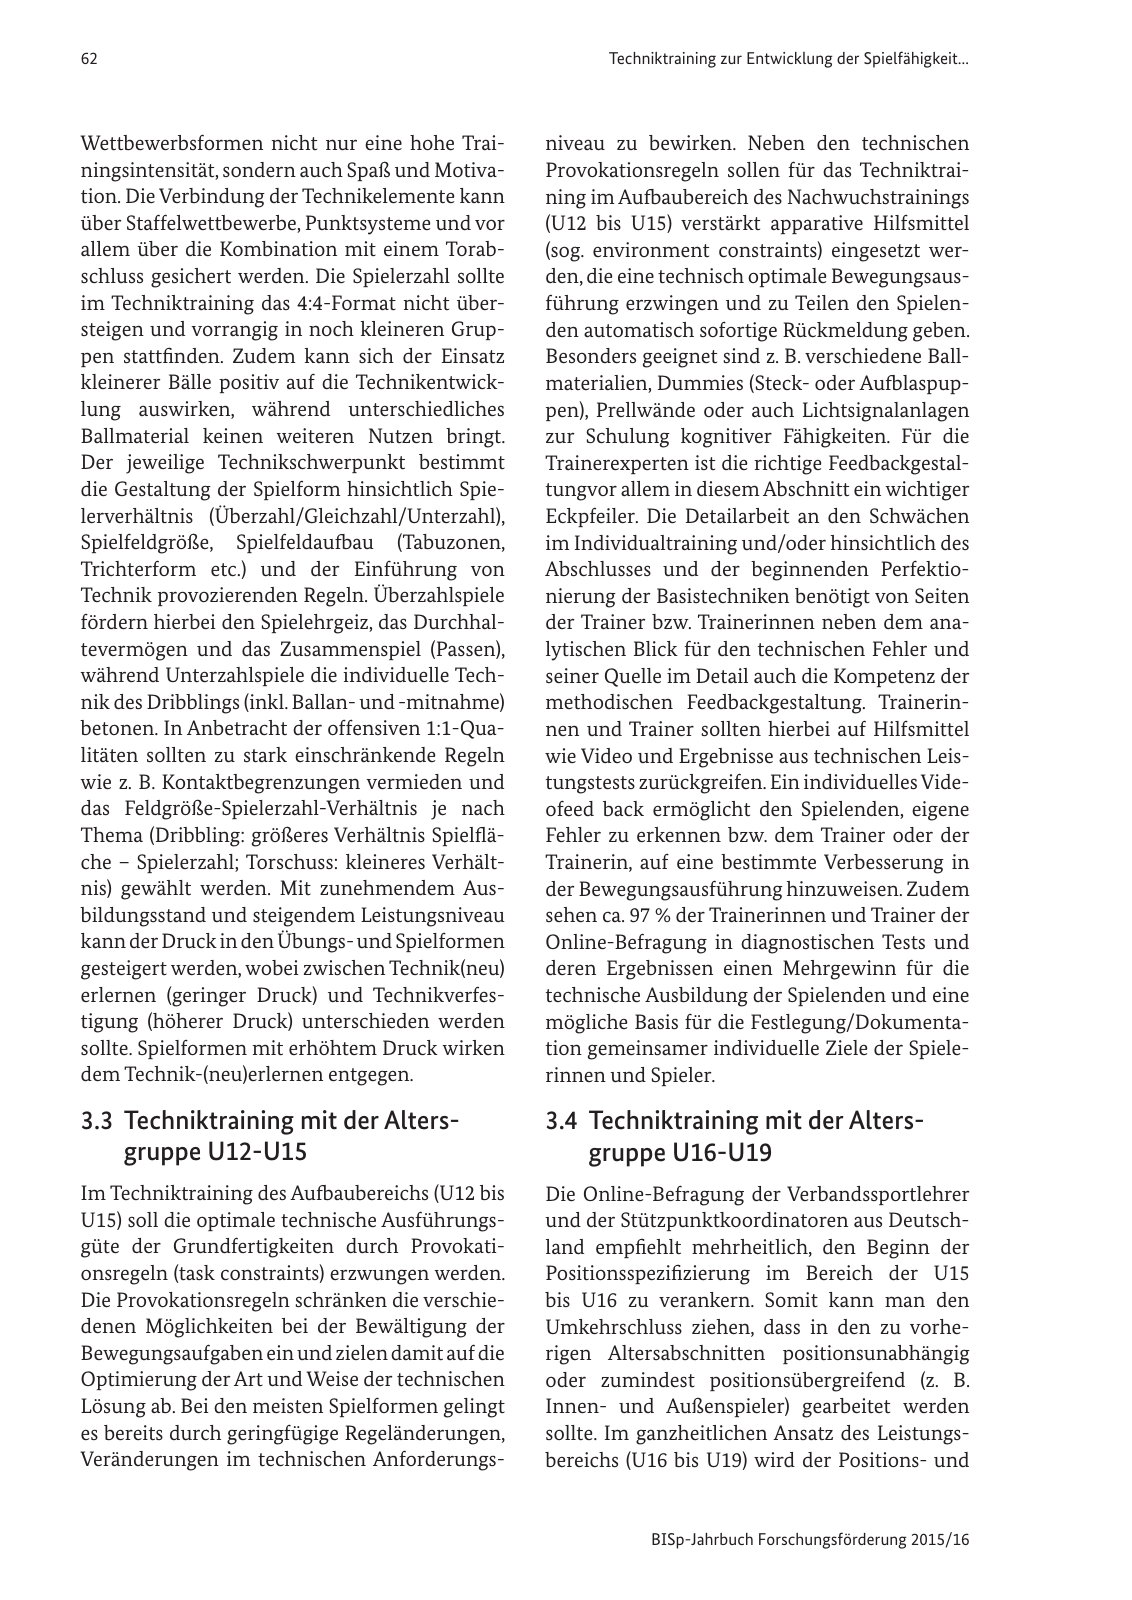 Vorschau BISp-Jahrbuch Forschungsförderung 2015/16 Seite 64